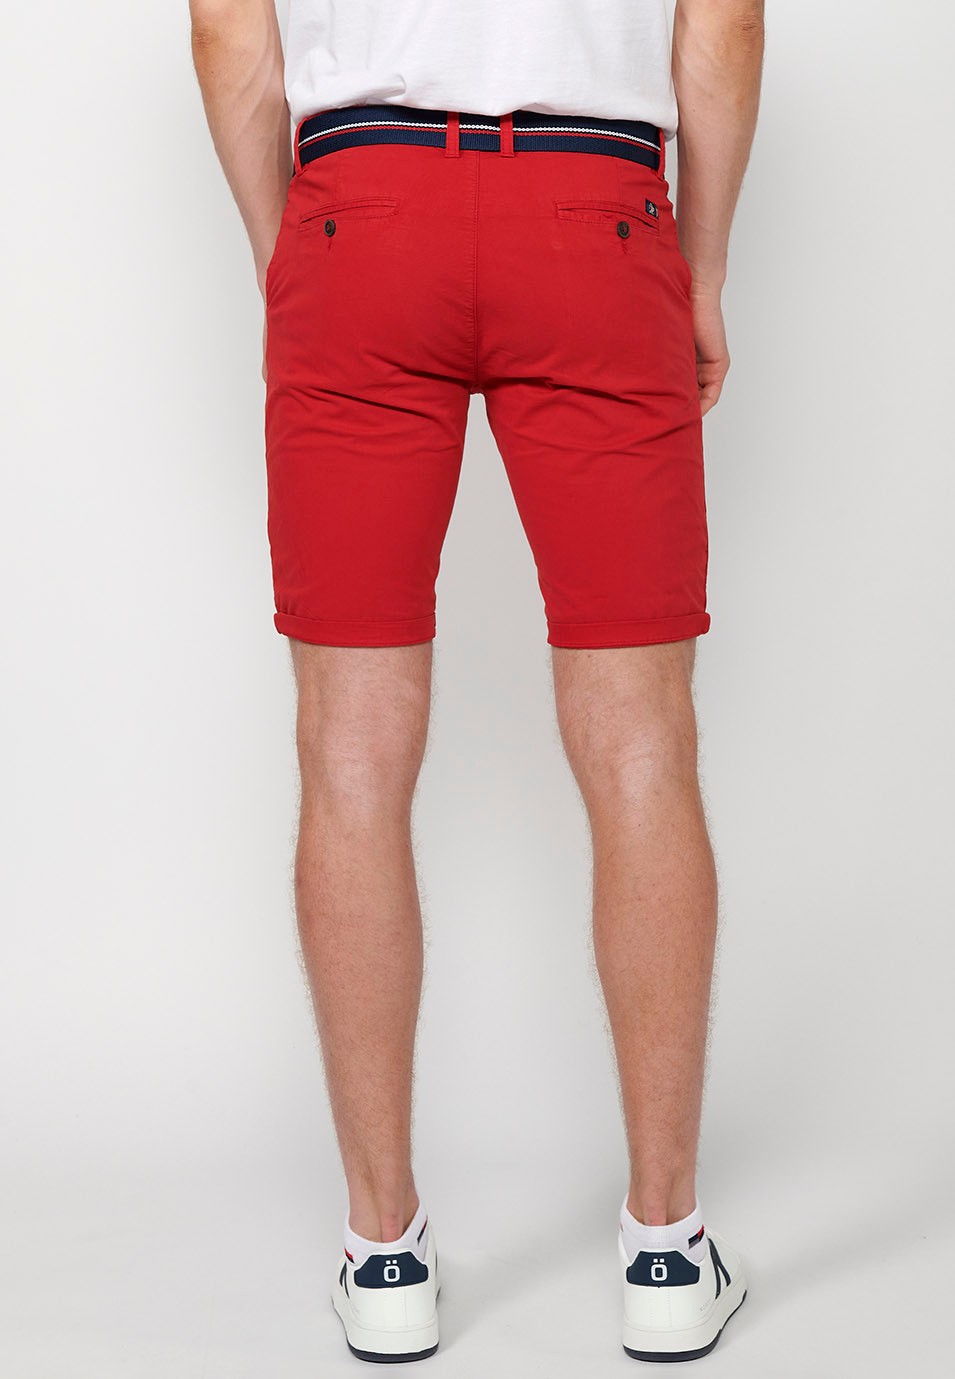 Pantalons curts acabats en volta amb Tancament davanter amb cremallera i botó i cinturó de Color Roig per a Home 2